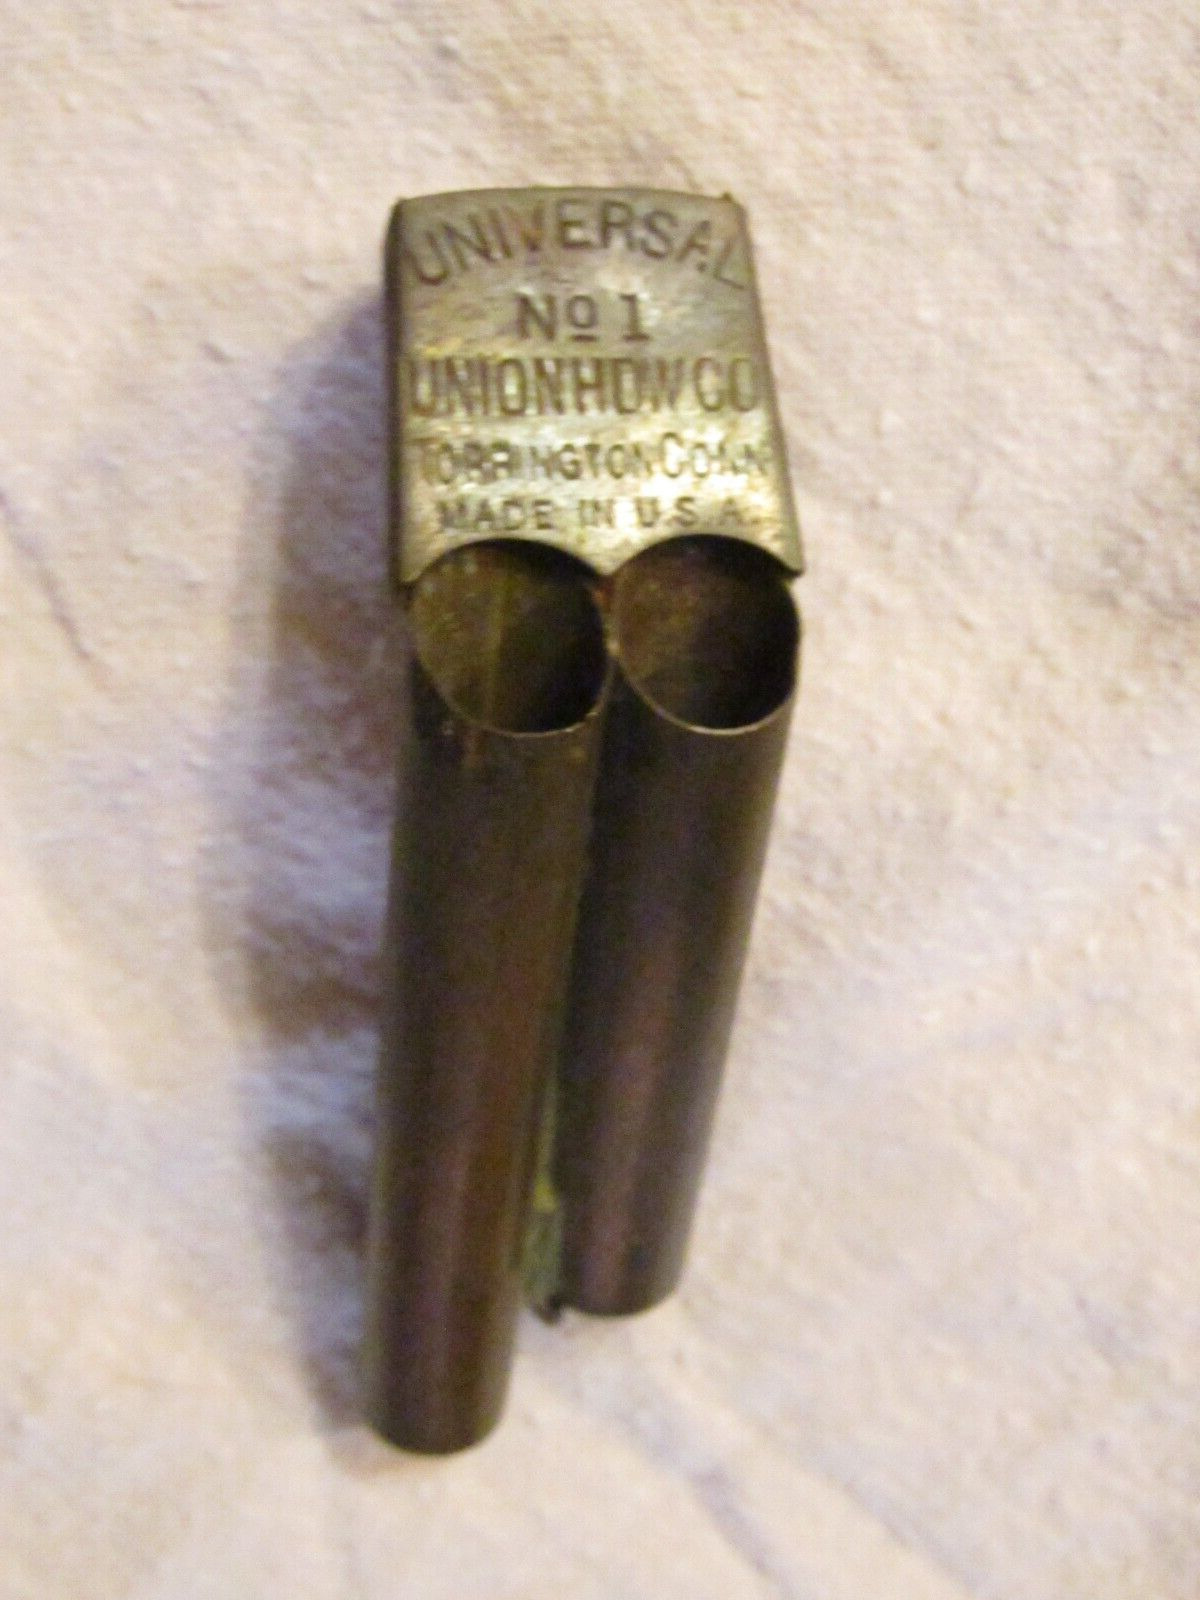 Antique Union Hardware Co. Universal No.1 Bicycle Whistle Torrington Connecticut